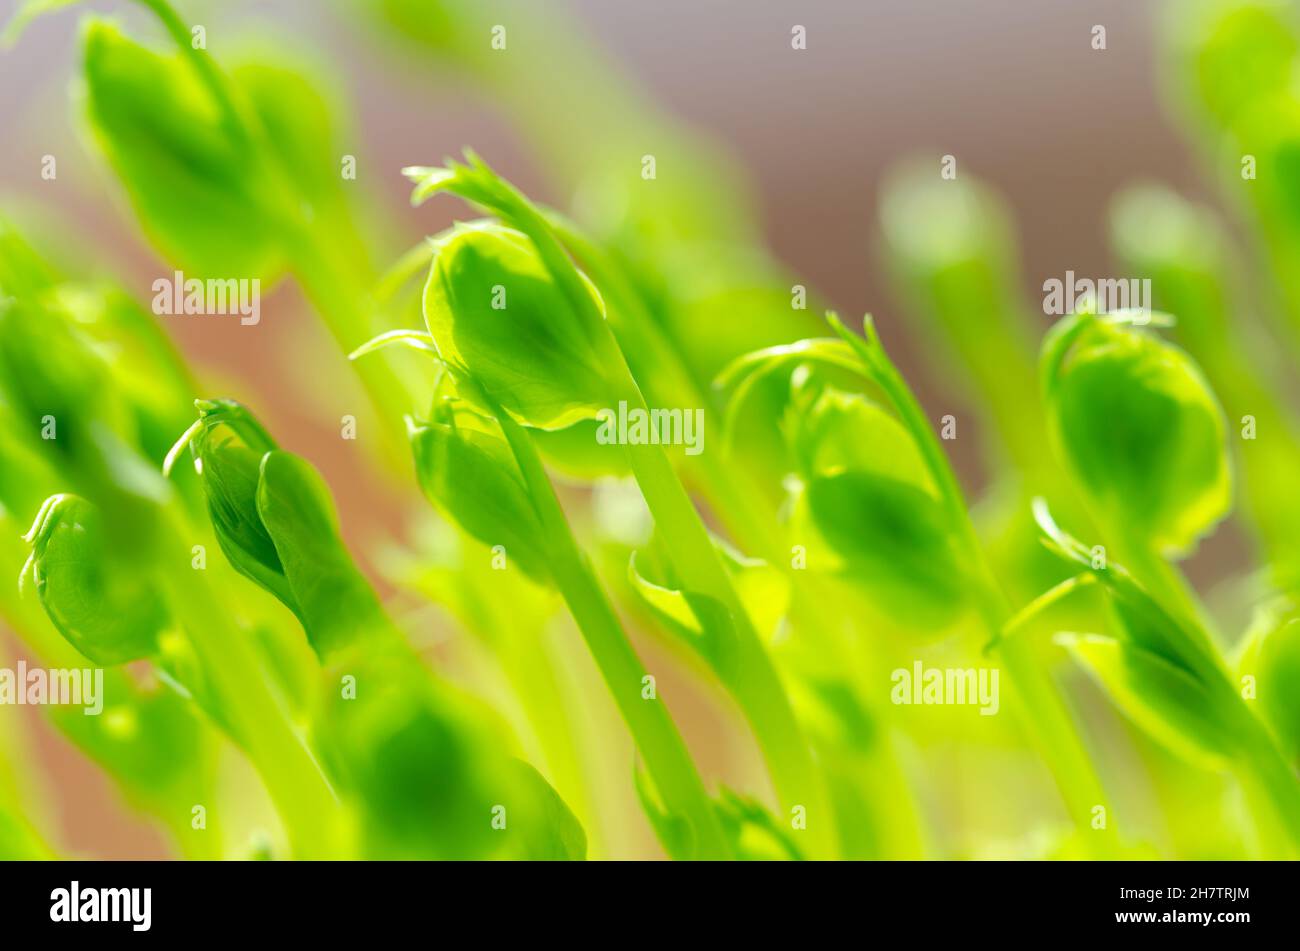 Grüne Erbsenaugen, Vorderansicht und Nahaufnahme. Microgreens und Jungpflanzen von Pisum sativum. Sämlinge und Sprossen, als Garnierung oder als Blattgemüse verwendet. Stockfoto